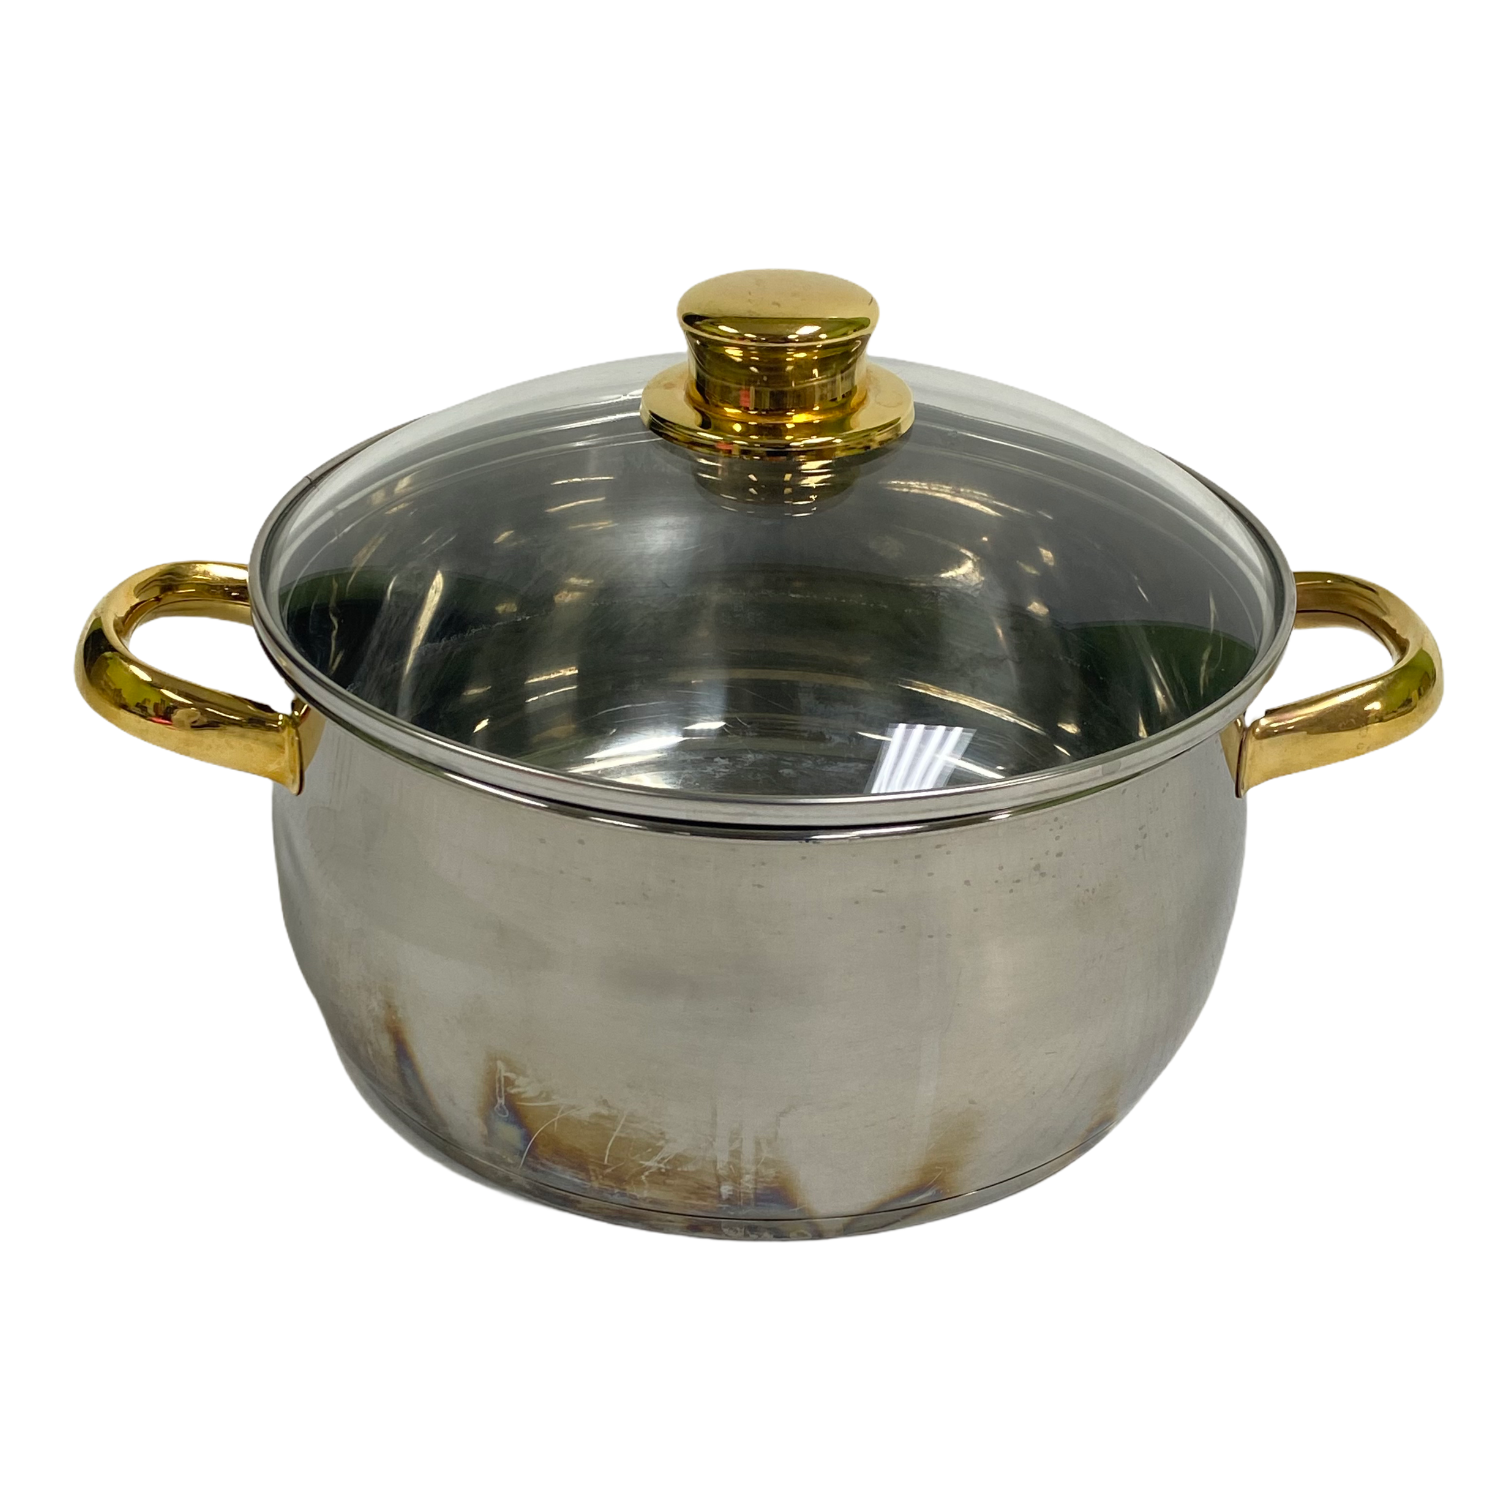  Cajun Classics Cookware 10-Quart Stock Pot -10080: Home &  Kitchen